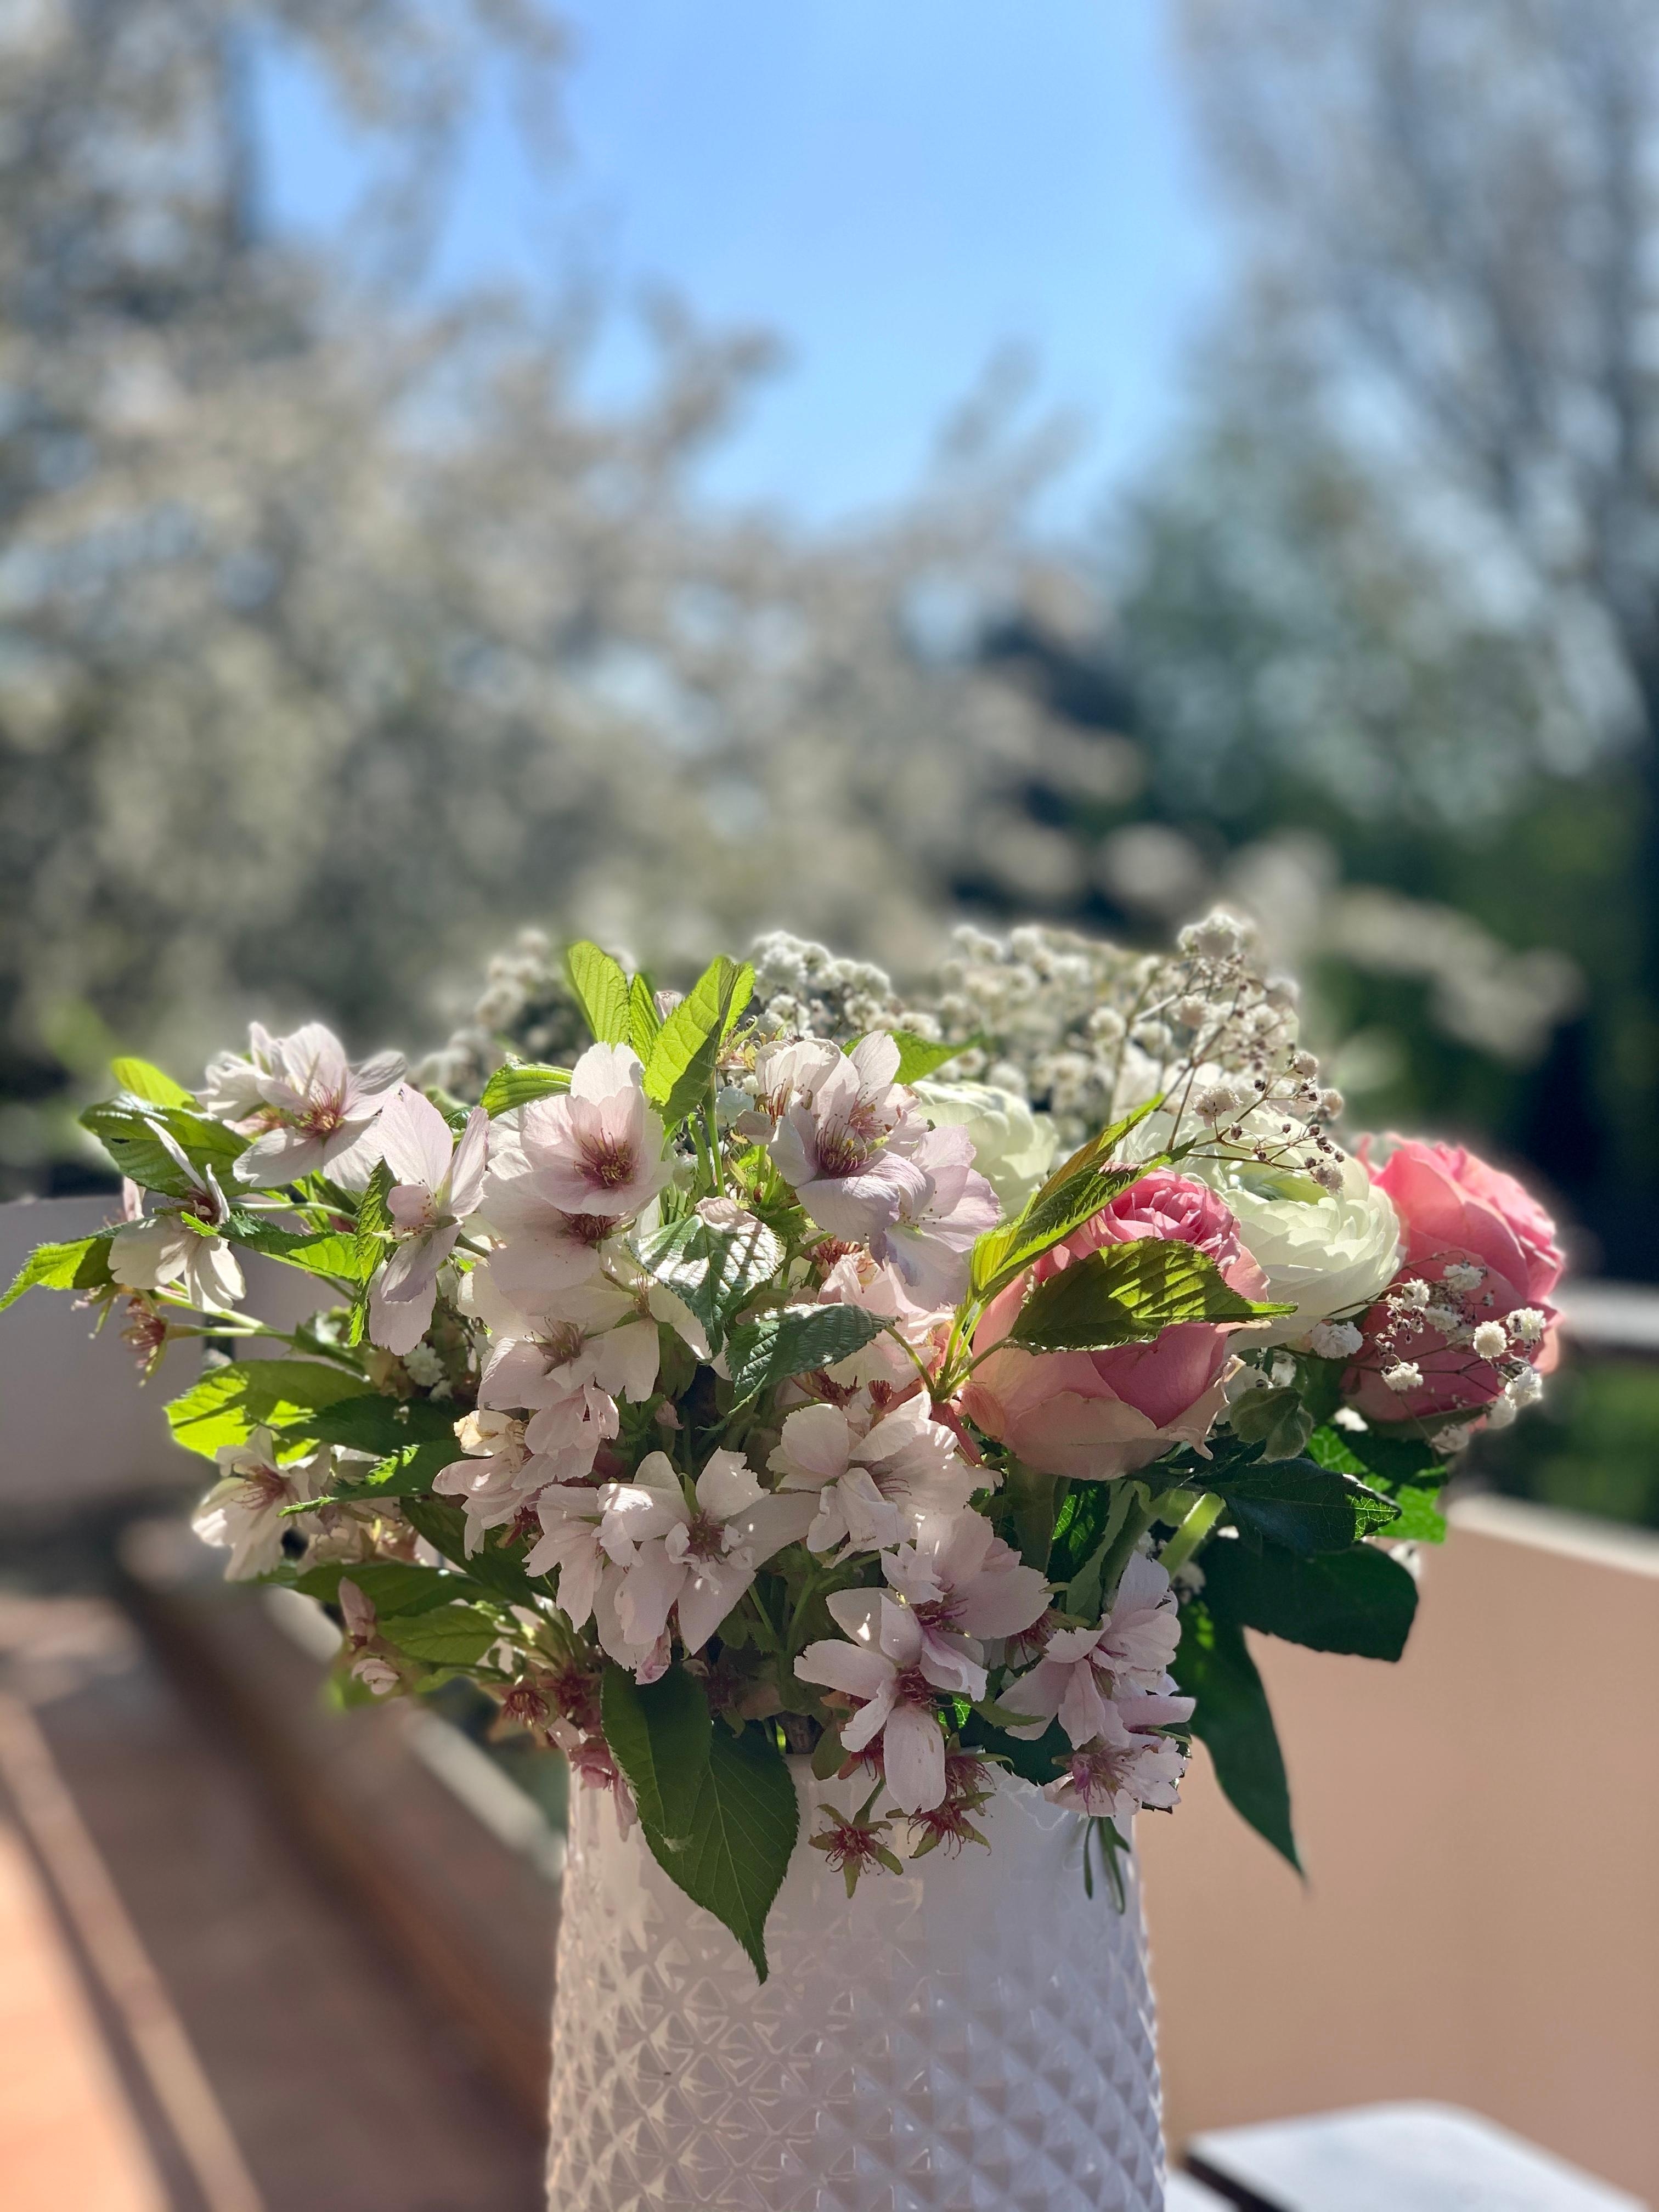 Blüten über Blüten, die Natur in die Vase geholt.🌸🌸 #freshflowers #frühlingsblumen #frühling #blumenstrauß